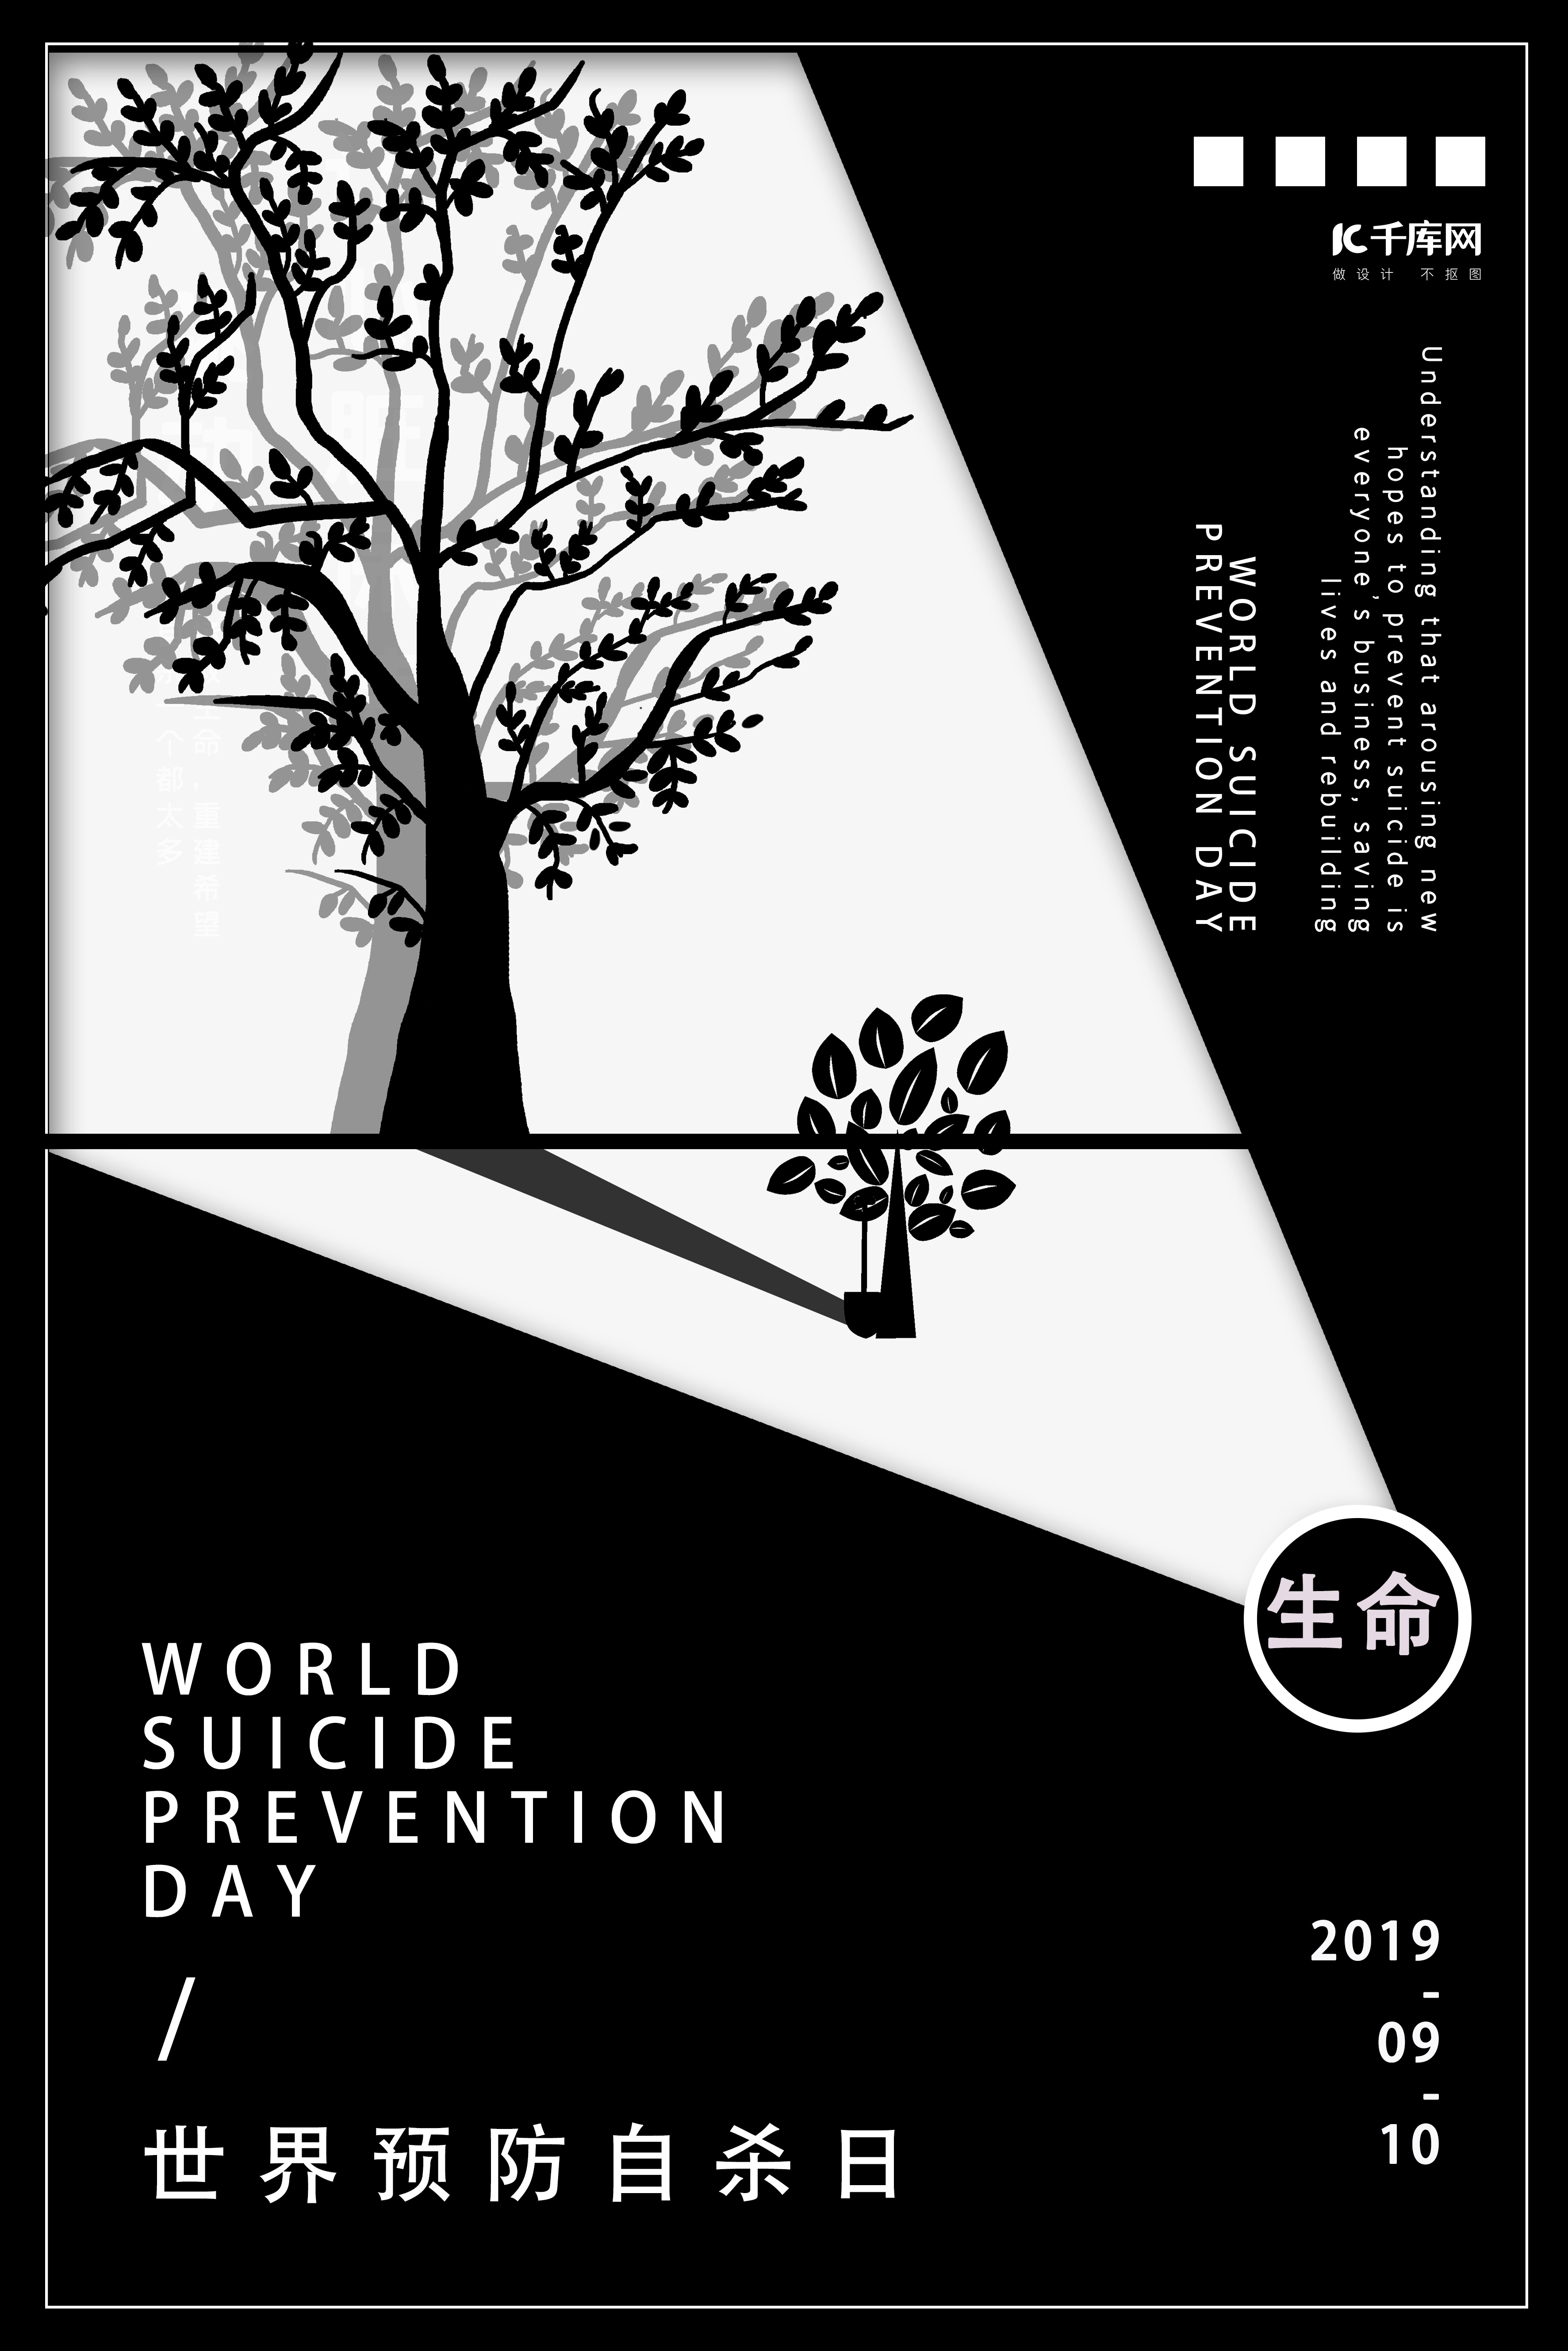 树苗剪影生命的伟大世界预防自杀日宣传海报图片